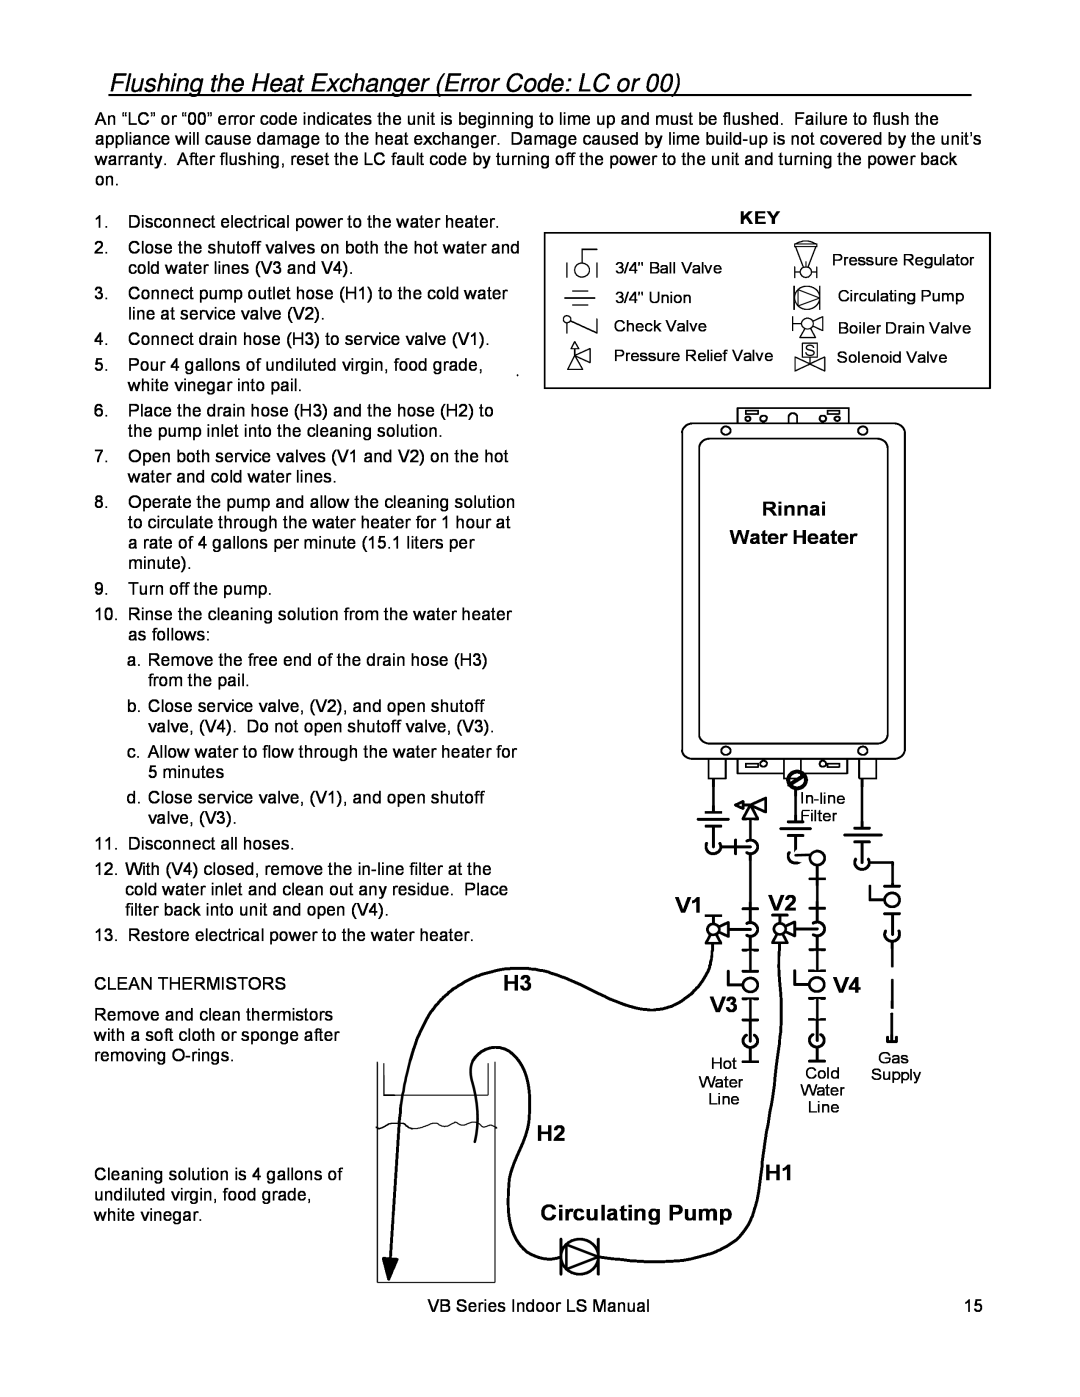 Rinnai RL75I, RL94I Flushing the Heat Exchanger Error Code: LC or, H2 H1 Circulating Pump, Rinnai Water Heater 